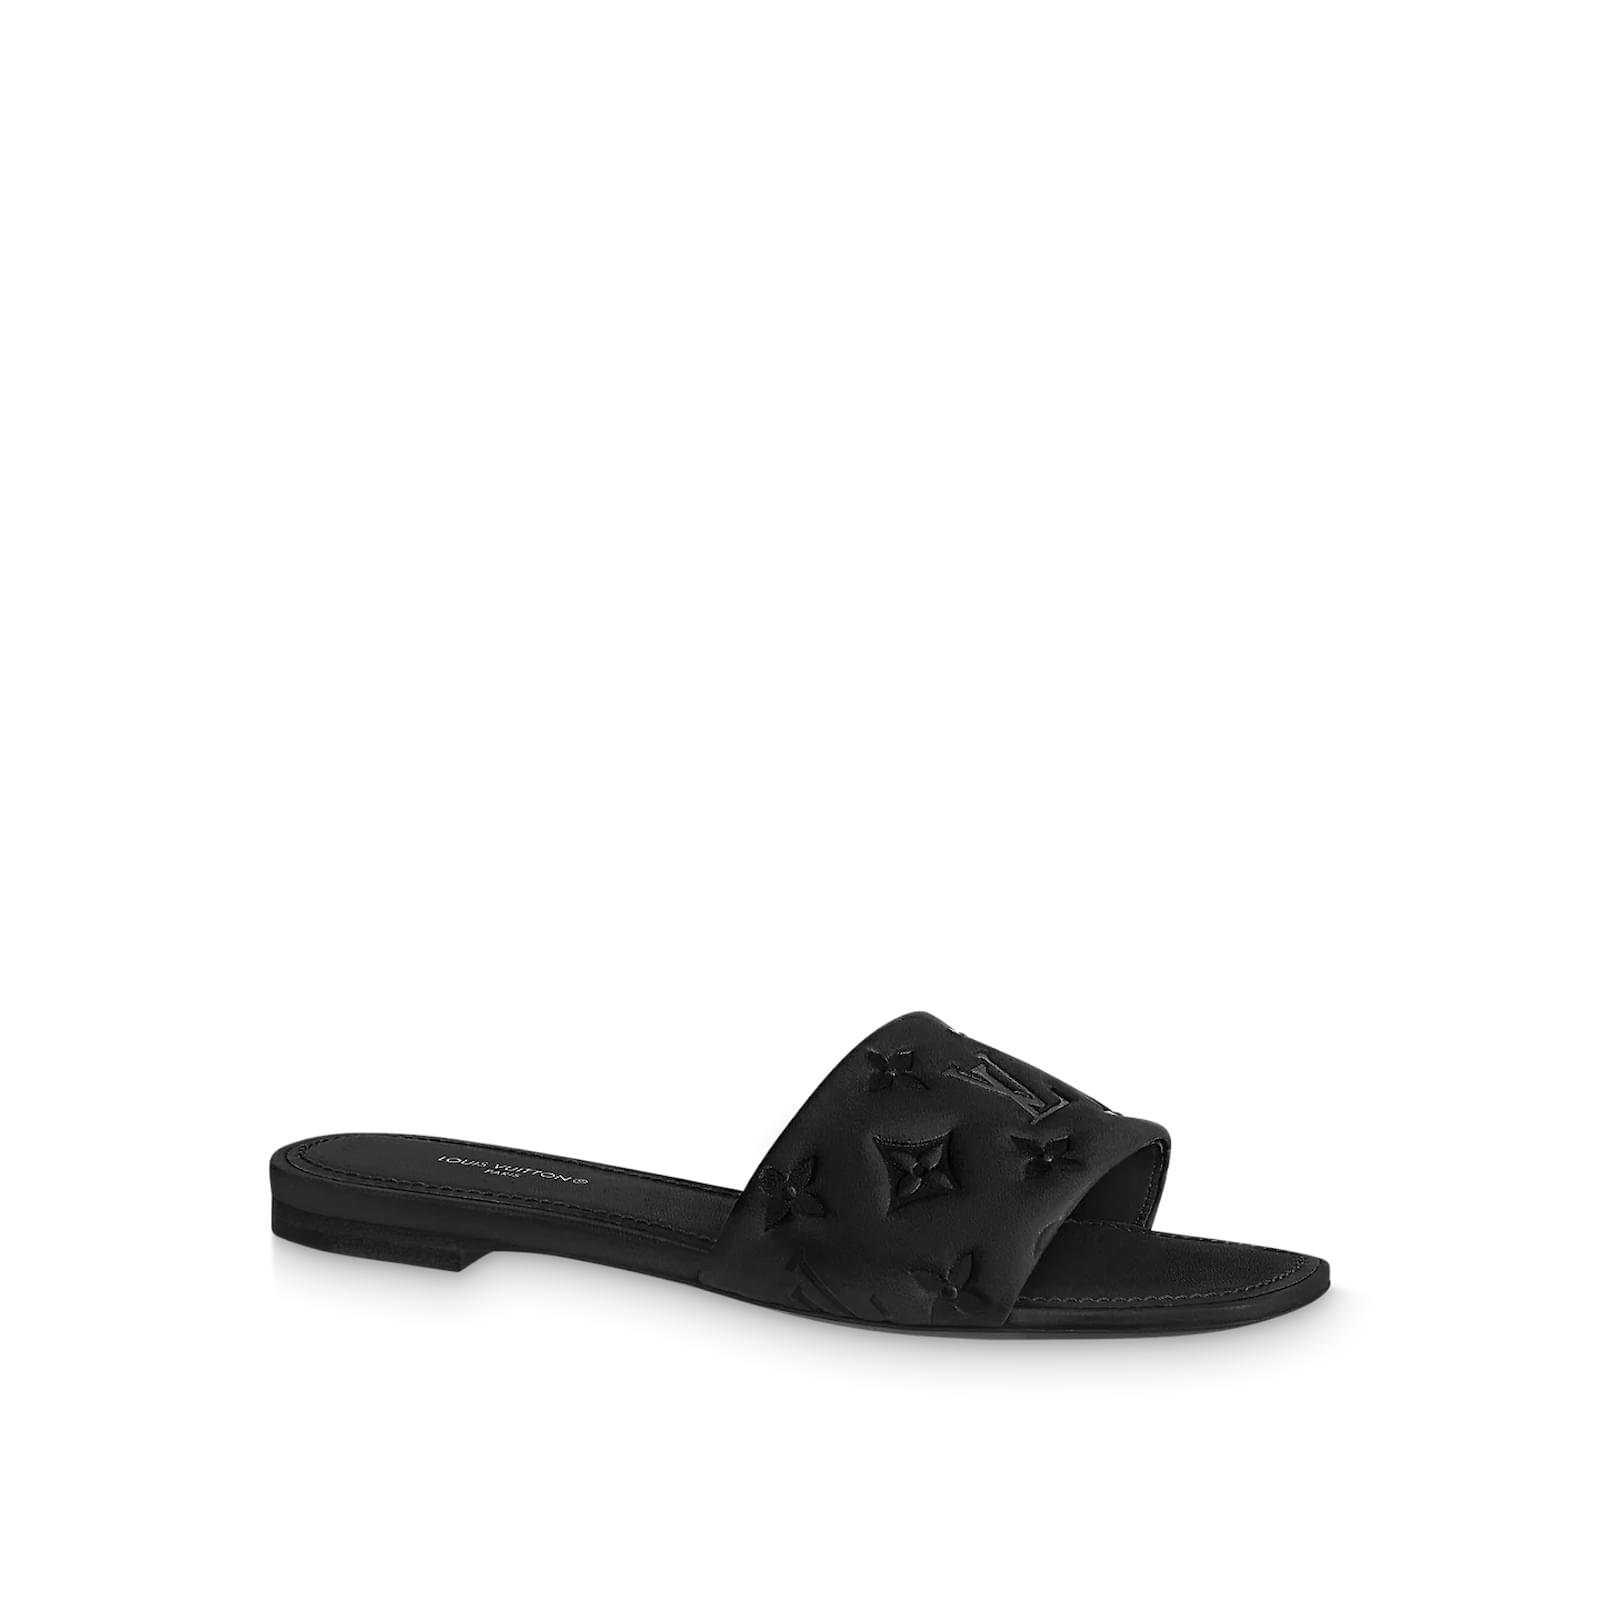 Sandal Louis Vuitton Black size 38 EU in Fur - 25277721